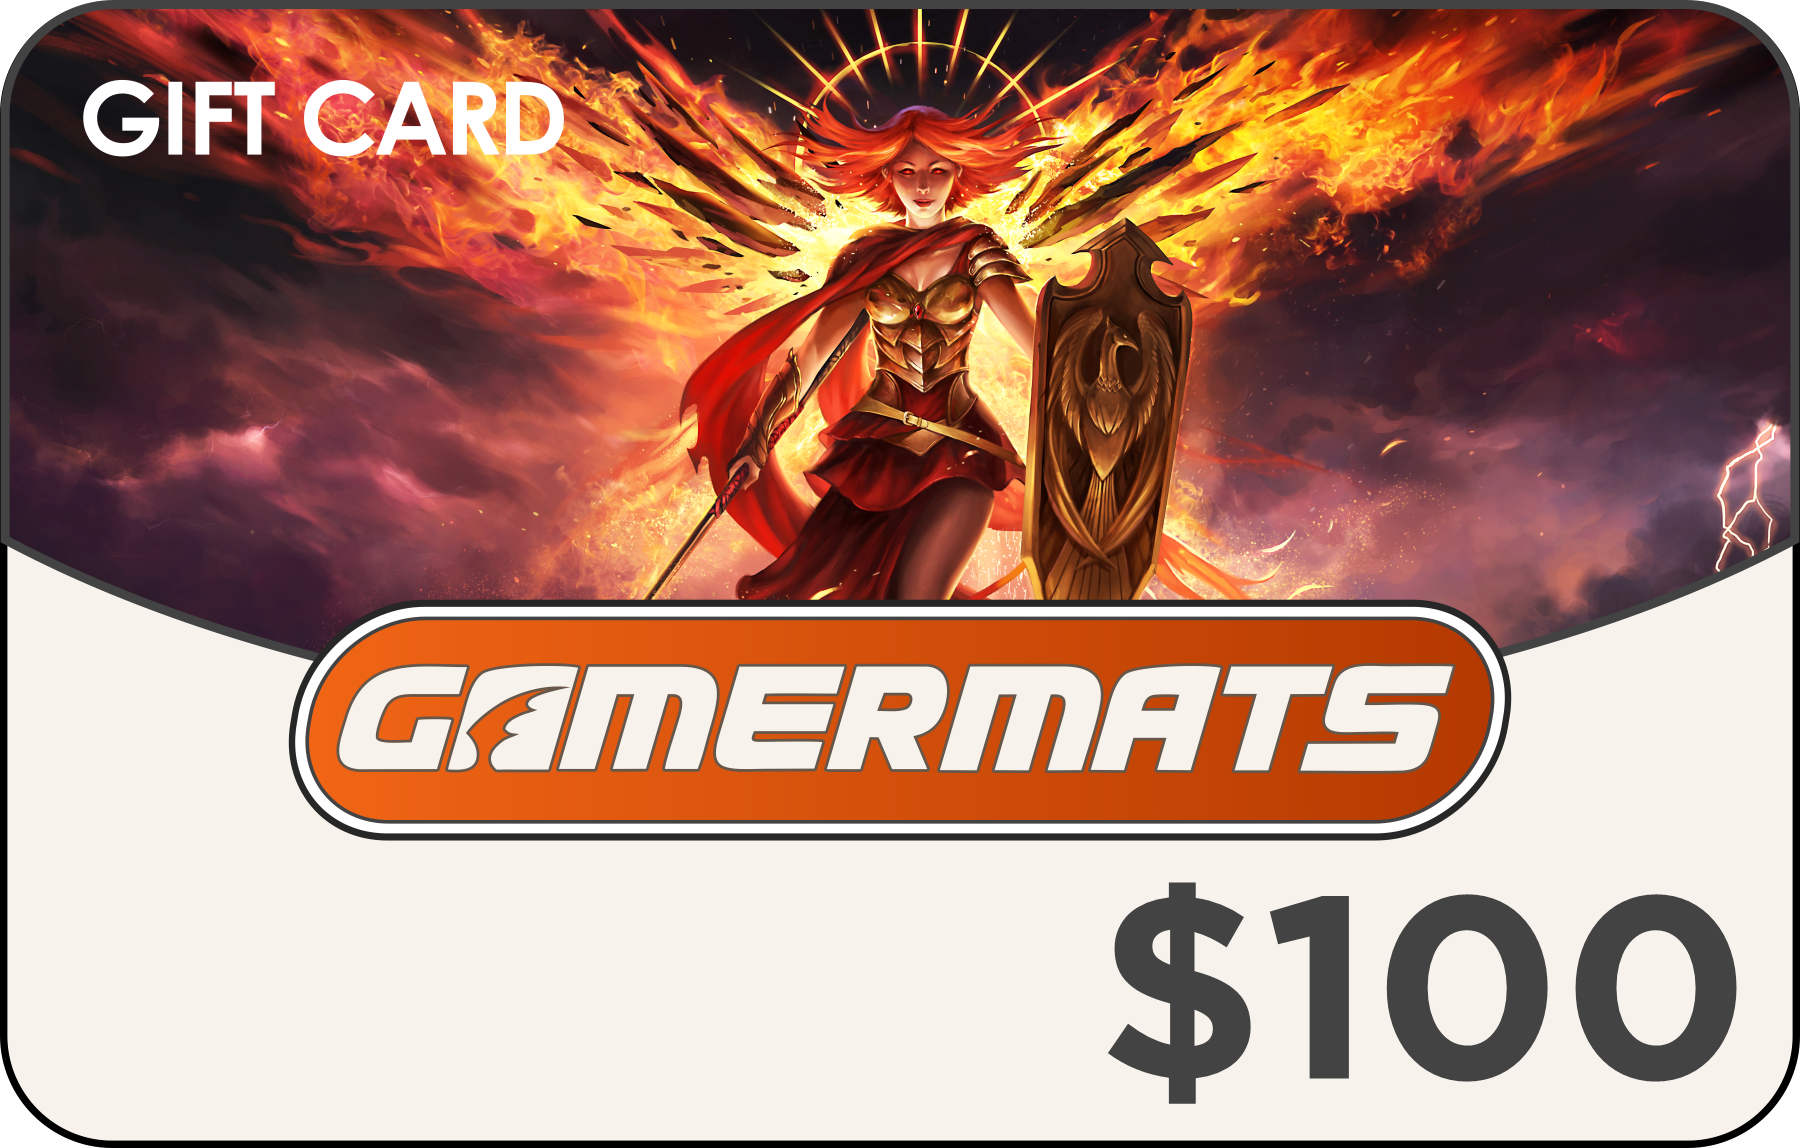 GamerMats Gift Card 100